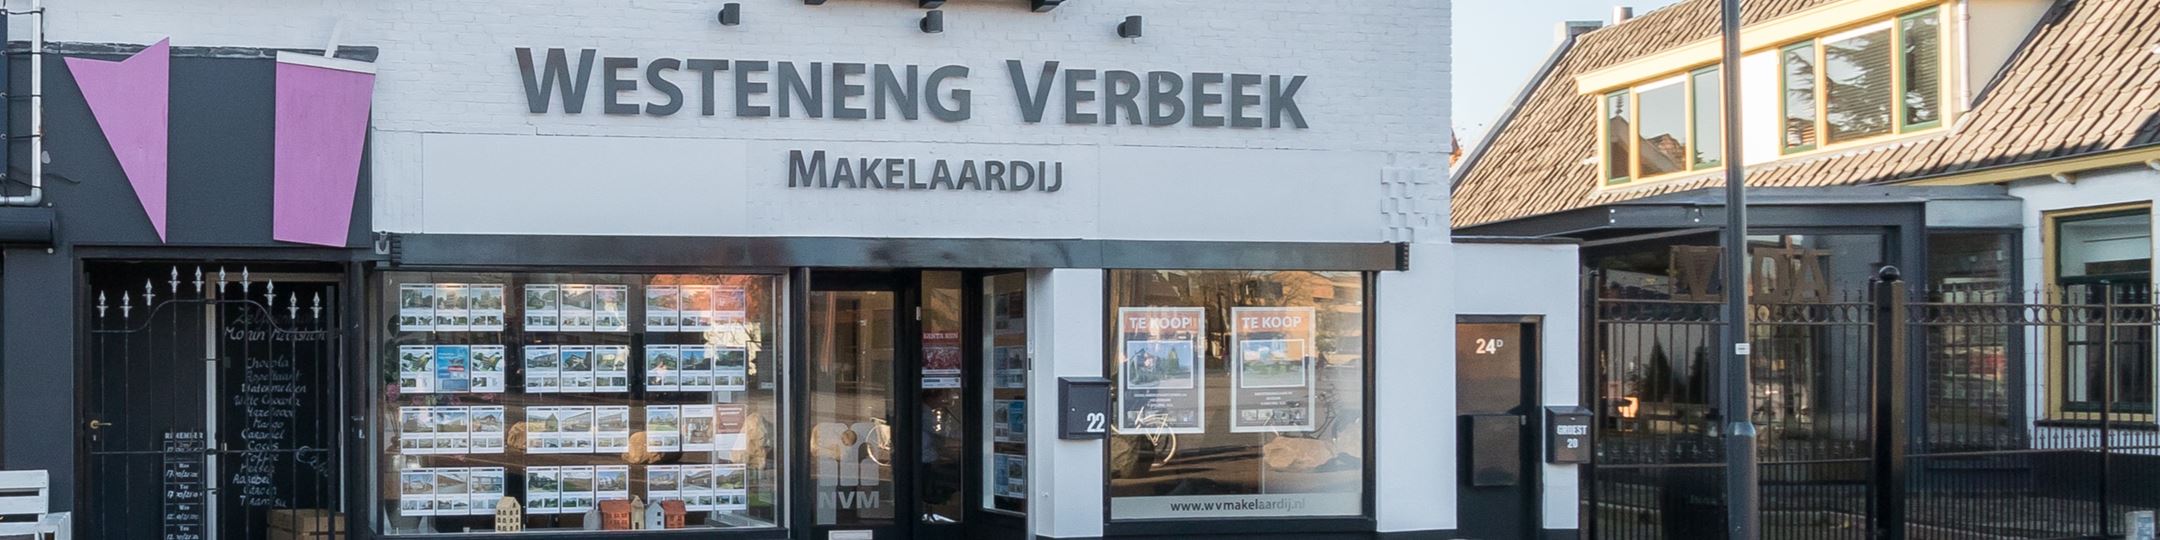 Foto Westeneng Verbeek Makelaardij Hilversum